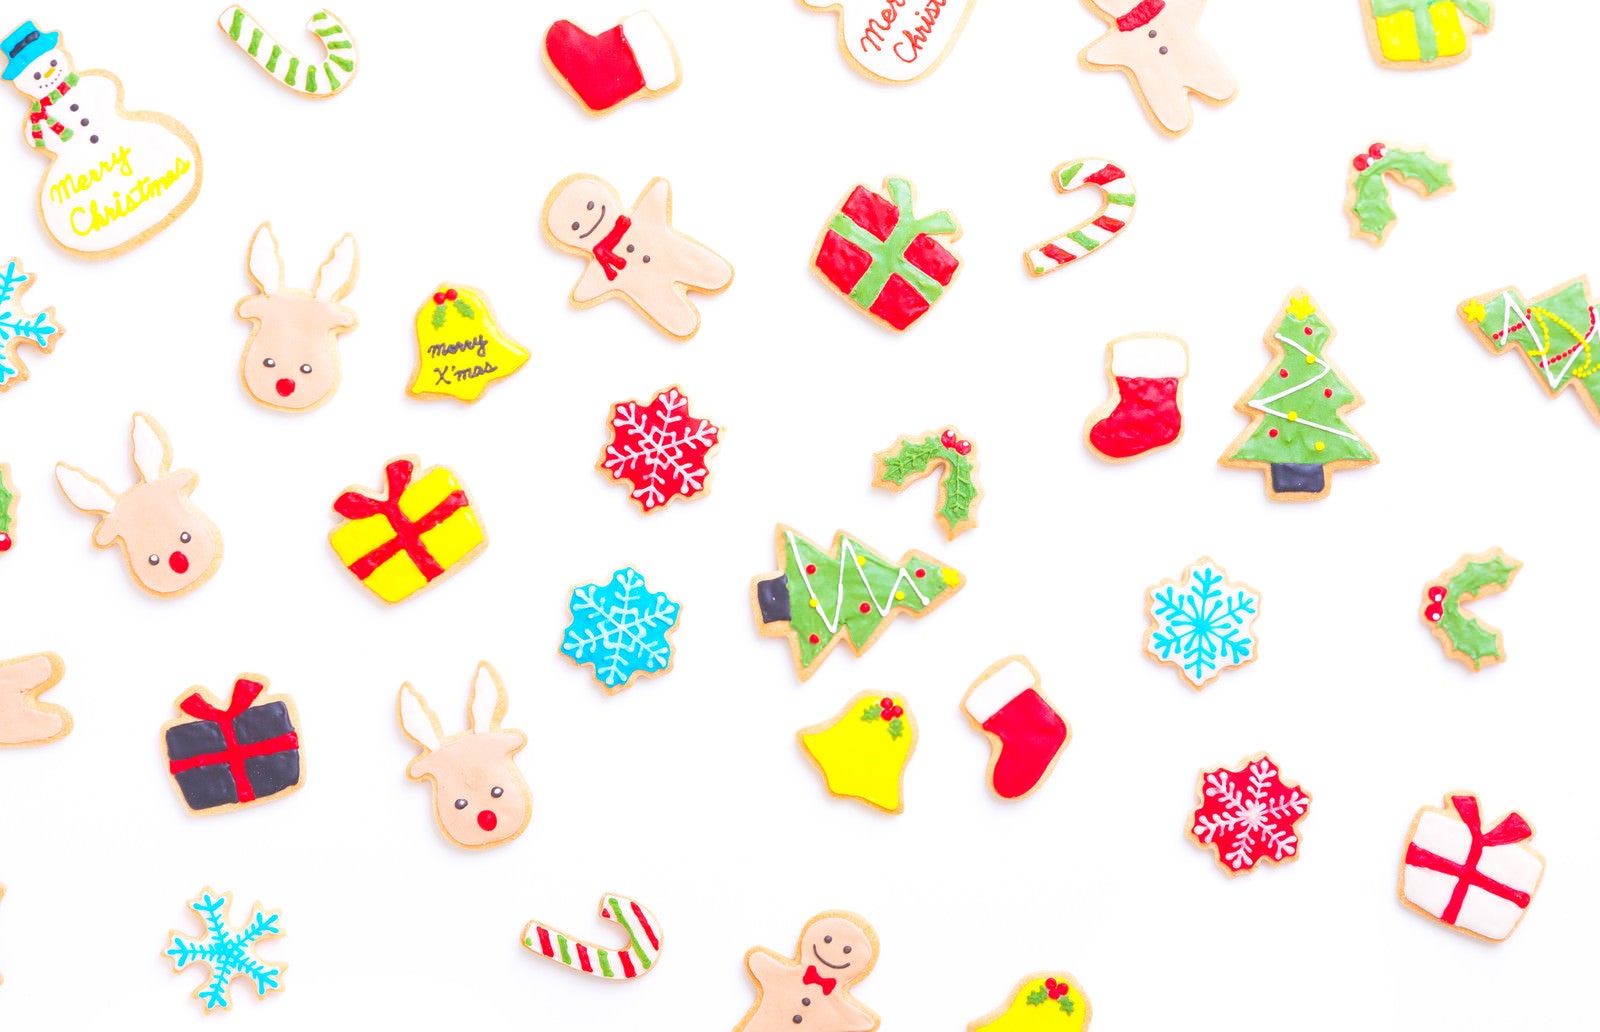 「クリスマス用手作りアイシングクッキー」の写真